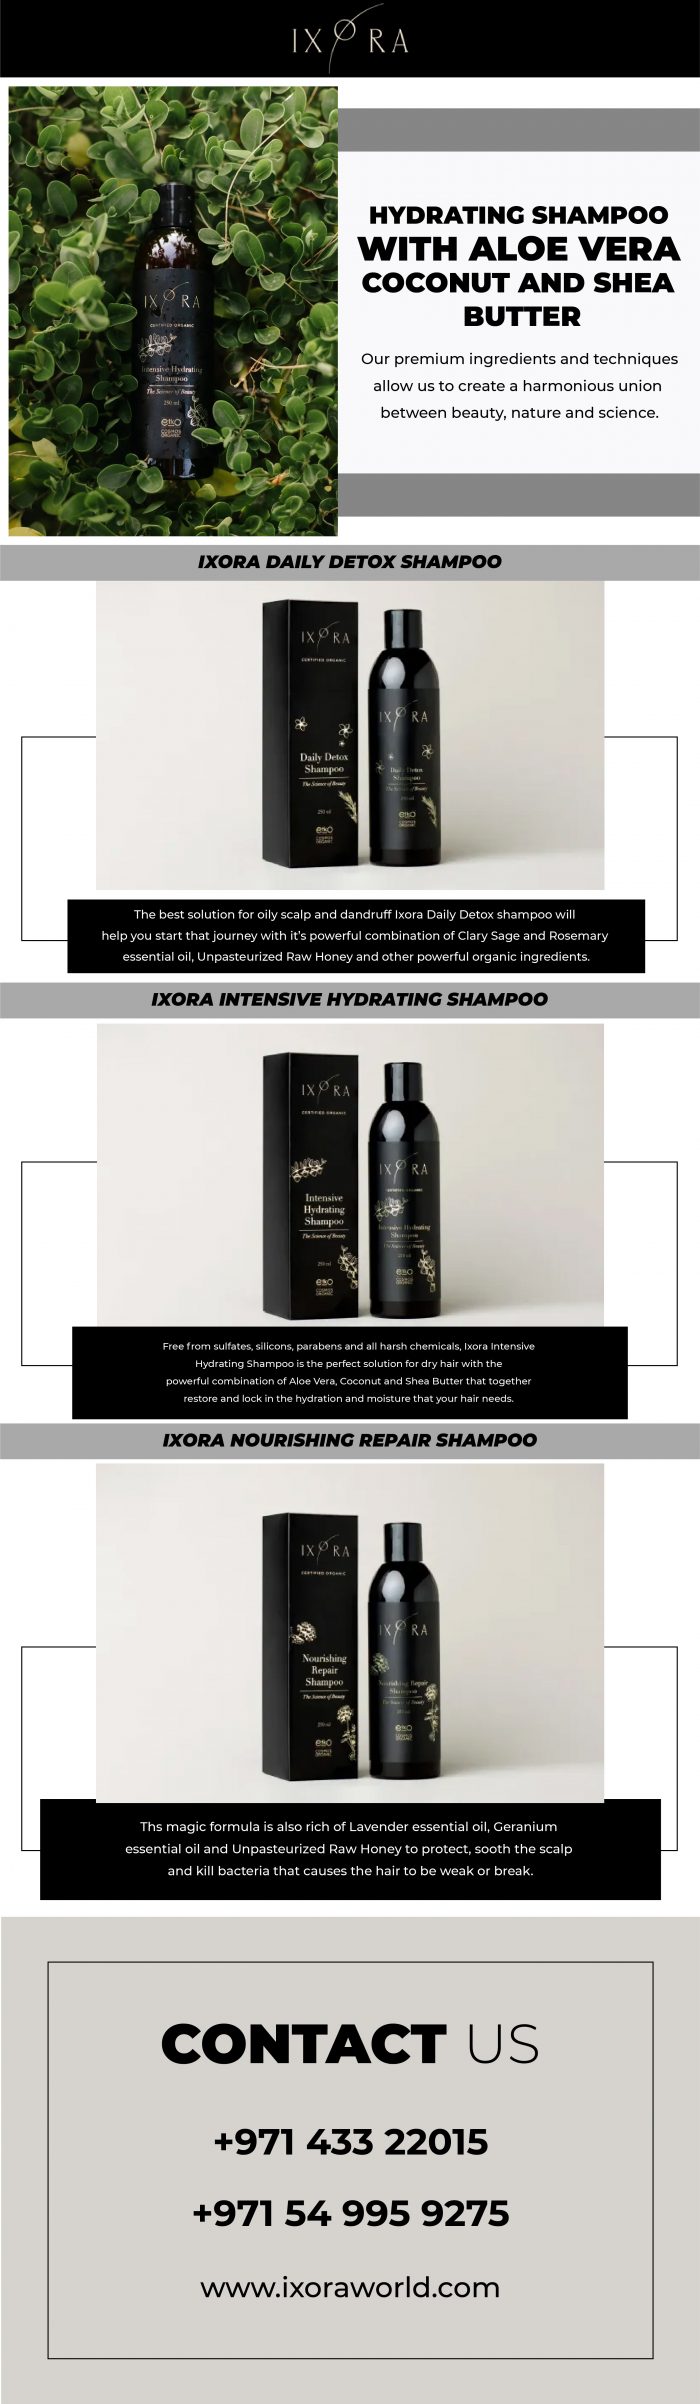 Hydrating Shampoo with Aloe Vera, Coconut and Shea Butter – Ixora World